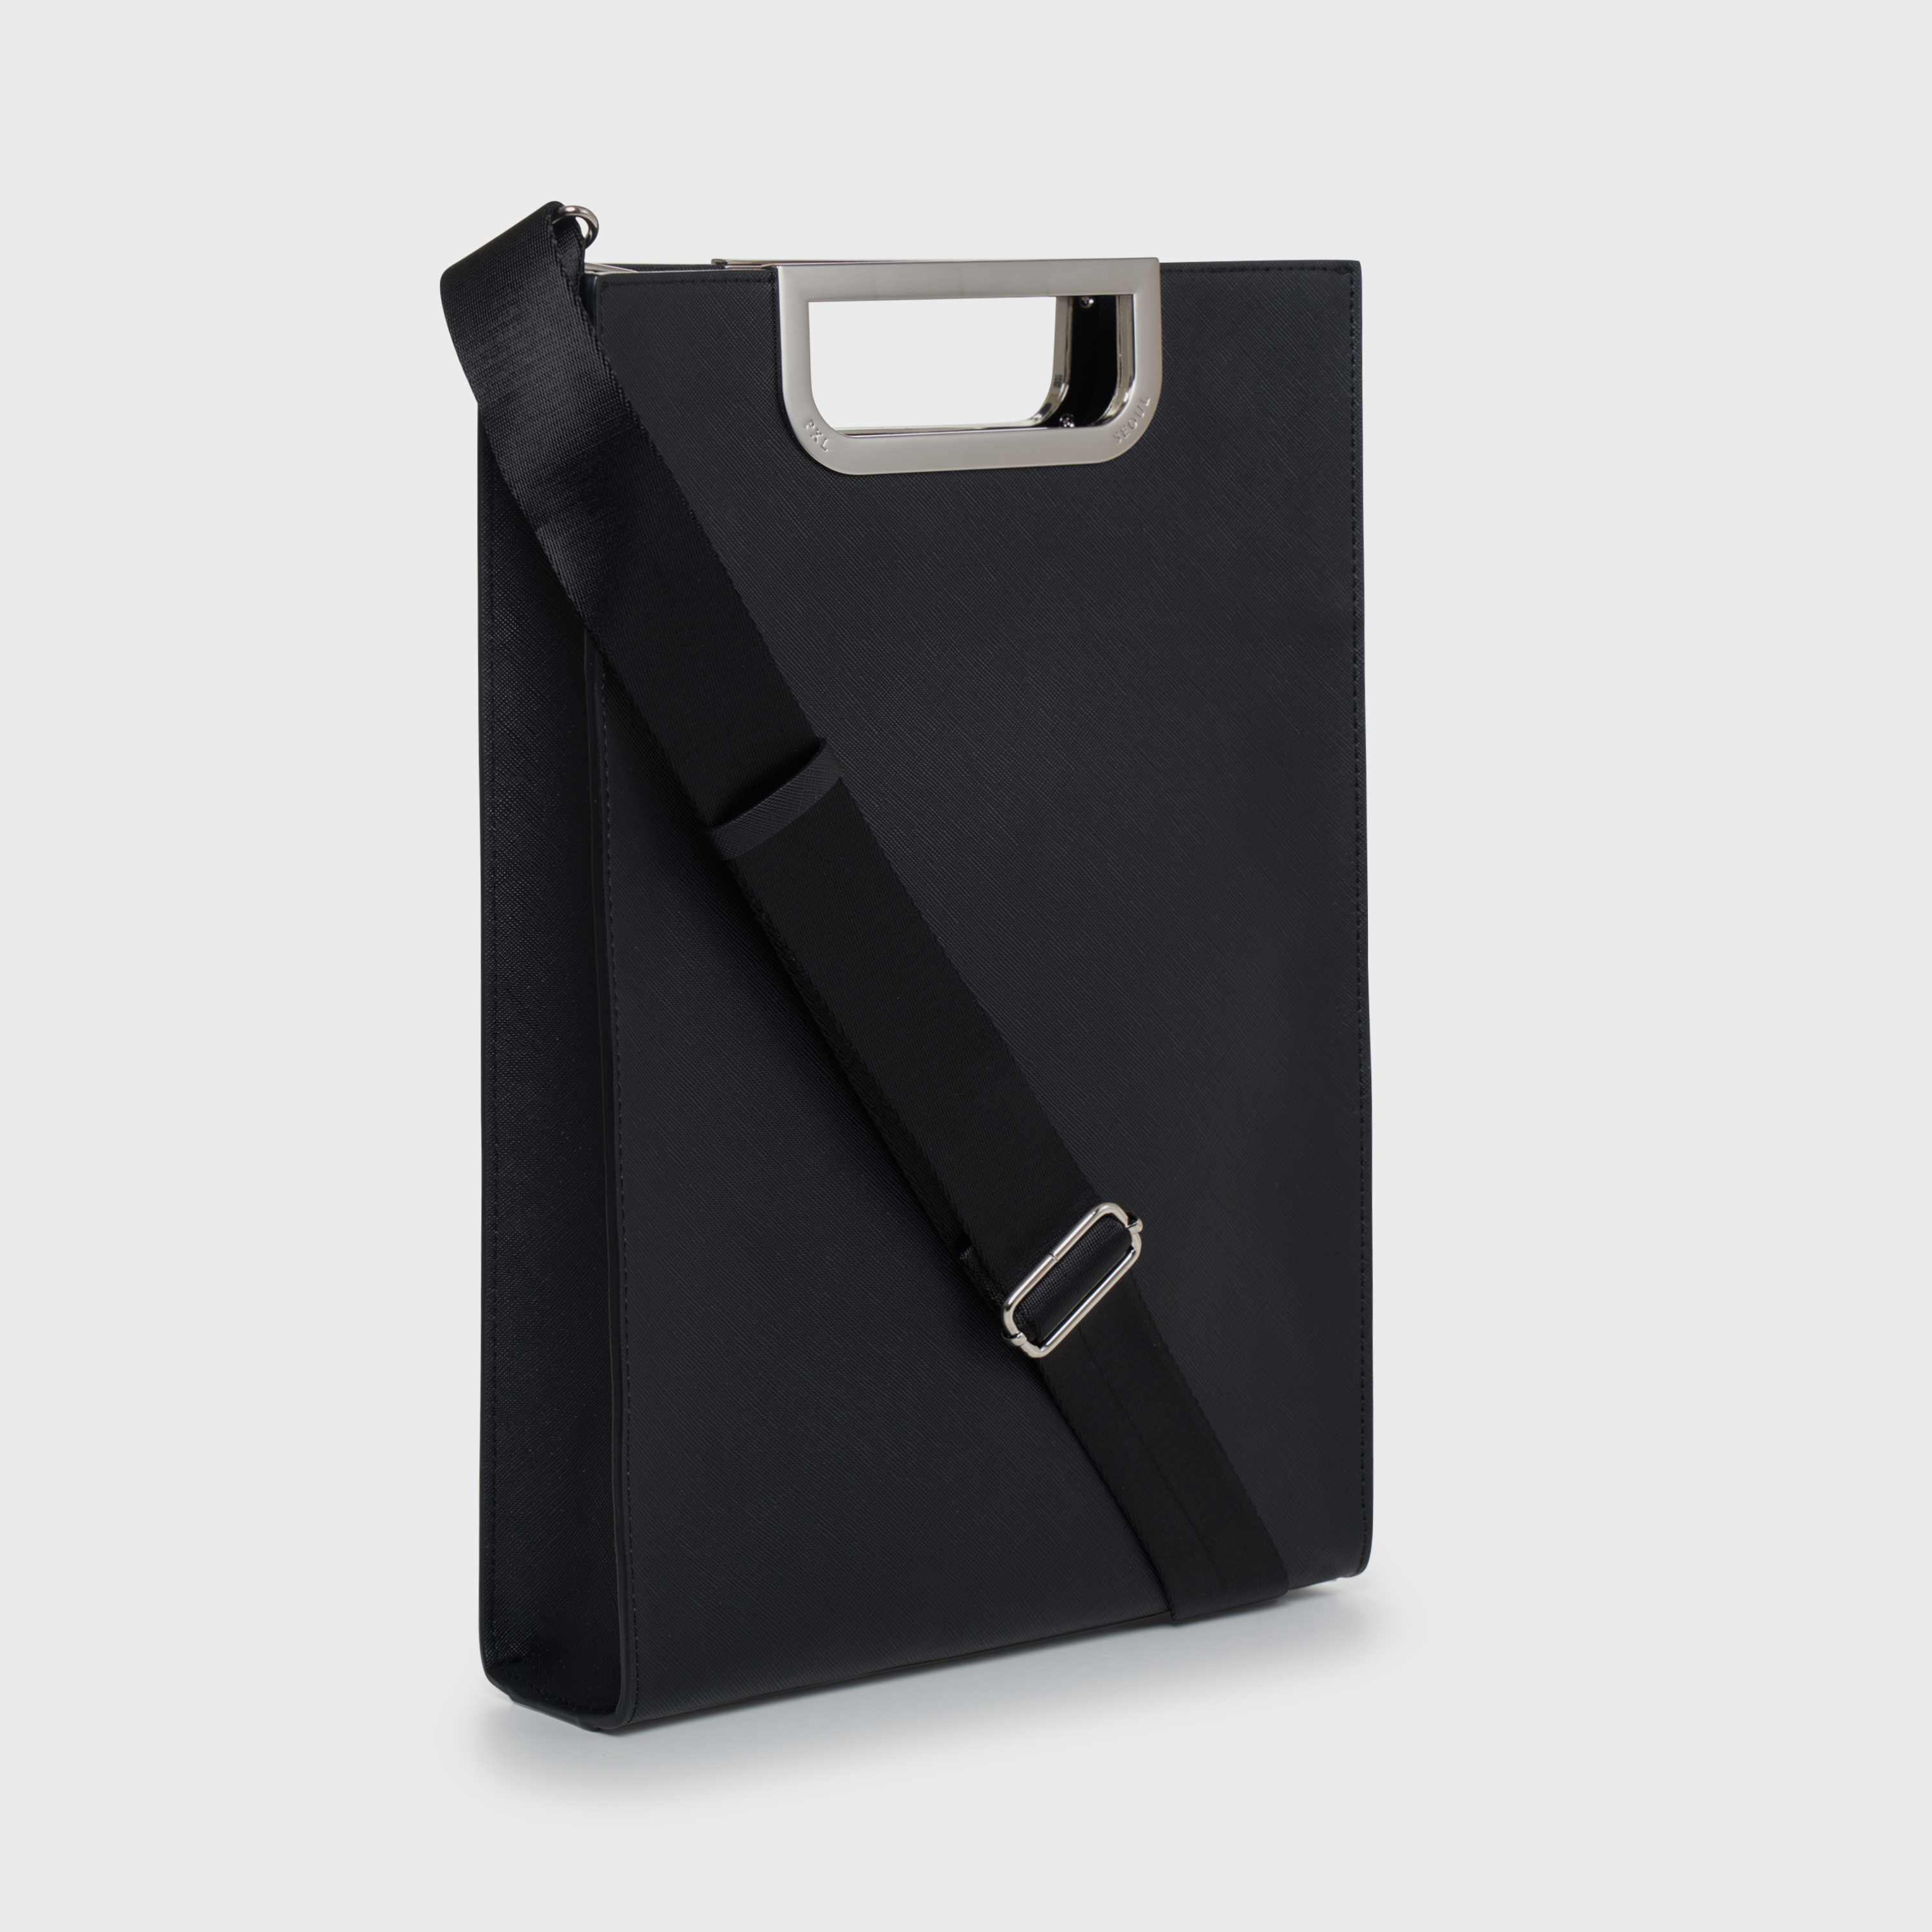 Metalgrip slim briefcase (Black/Silver)